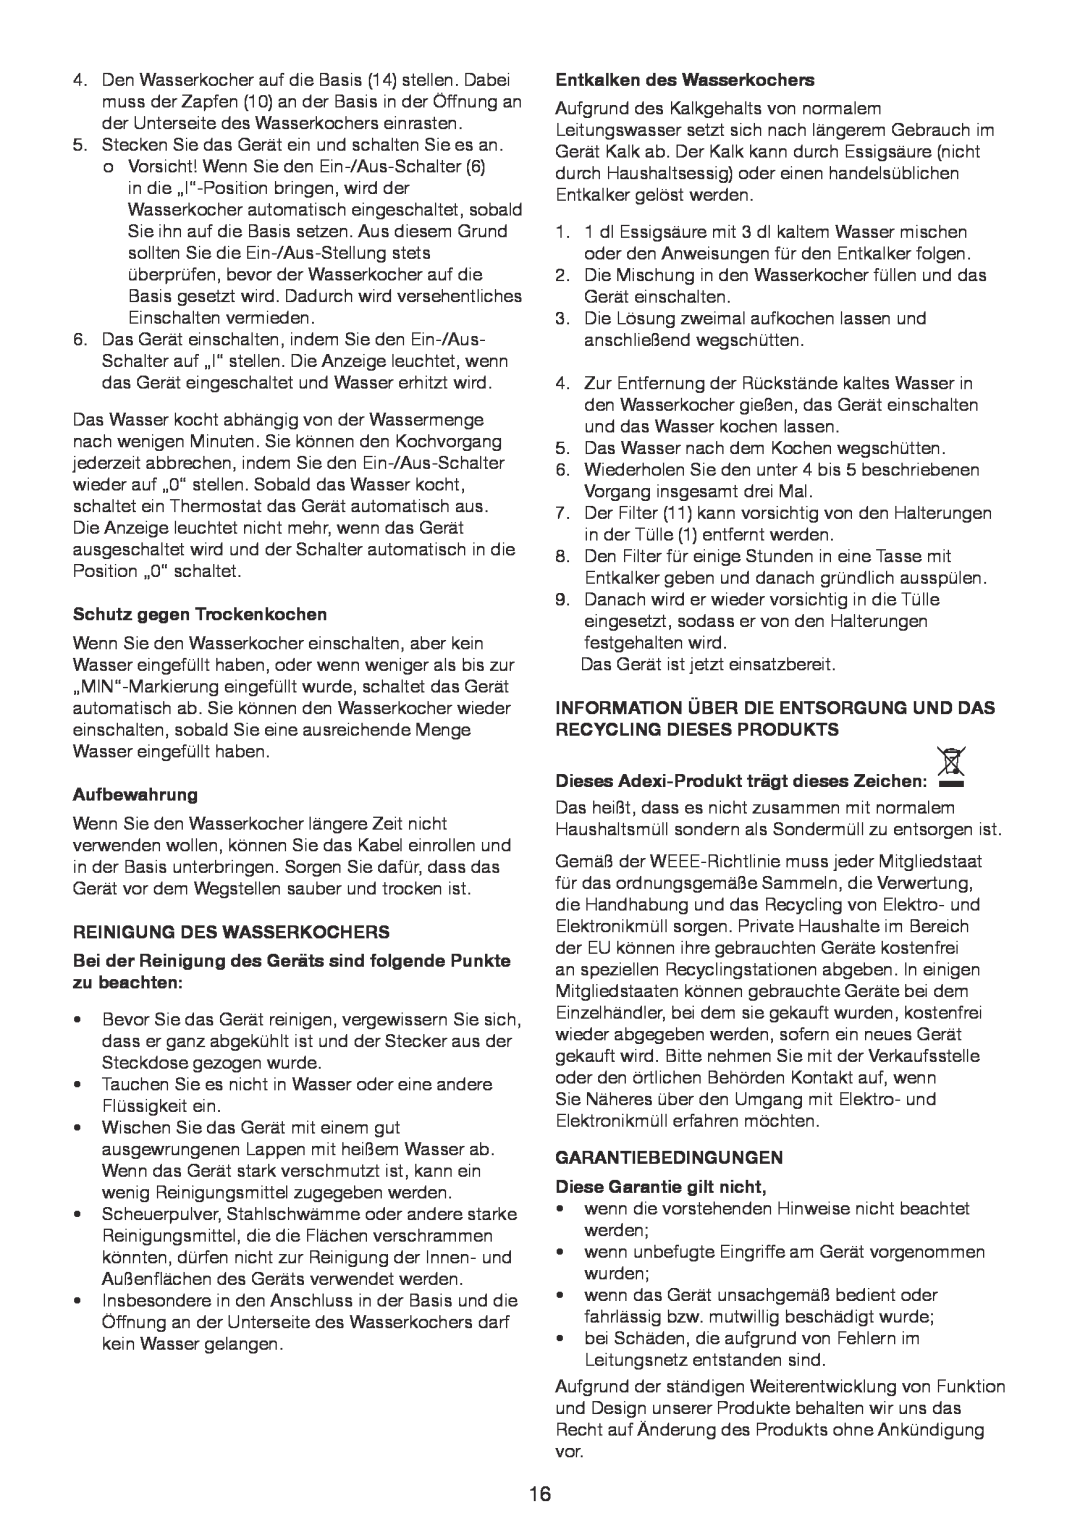 Exido 245-078 manual Schutz gegen Trockenkochen, Aufbewahrung, Reinigung Des Wasserkochers, Entkalken des Wasserkochers 